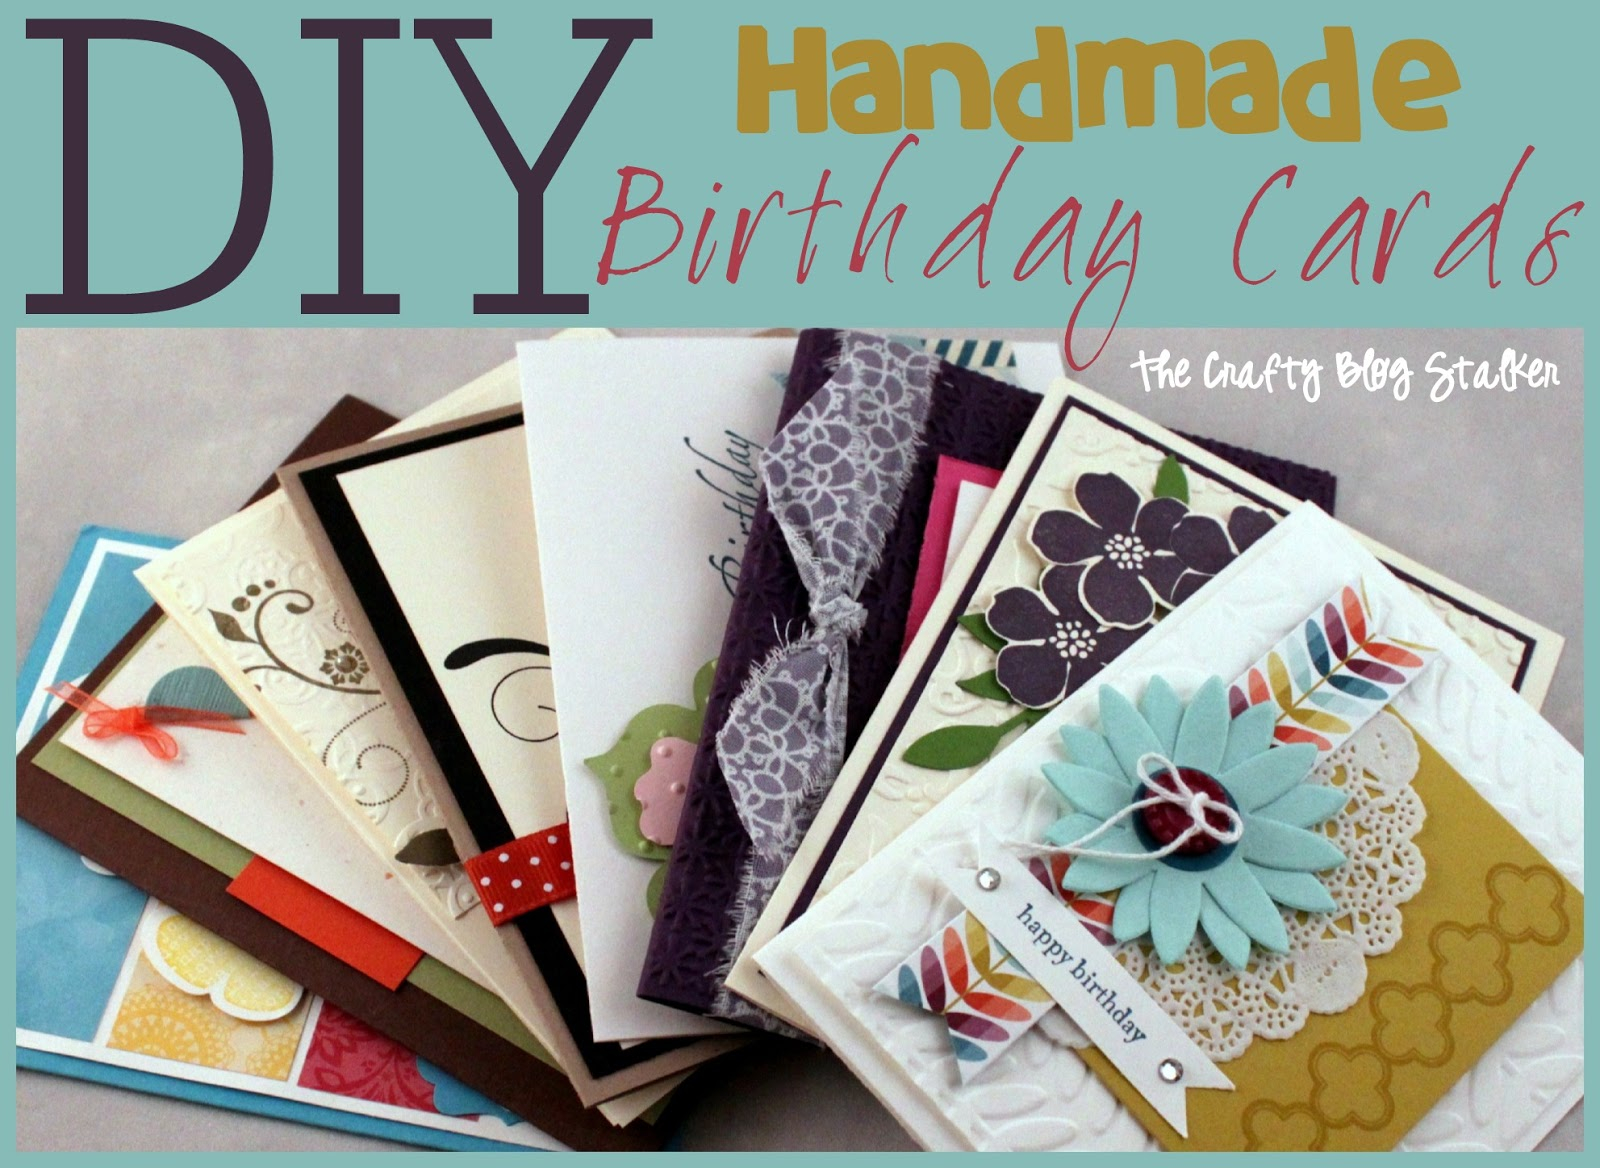 Creative Birthday Card Ideas For Mom Handmade Birthday Card Ideas The Crafty Blog Stalker